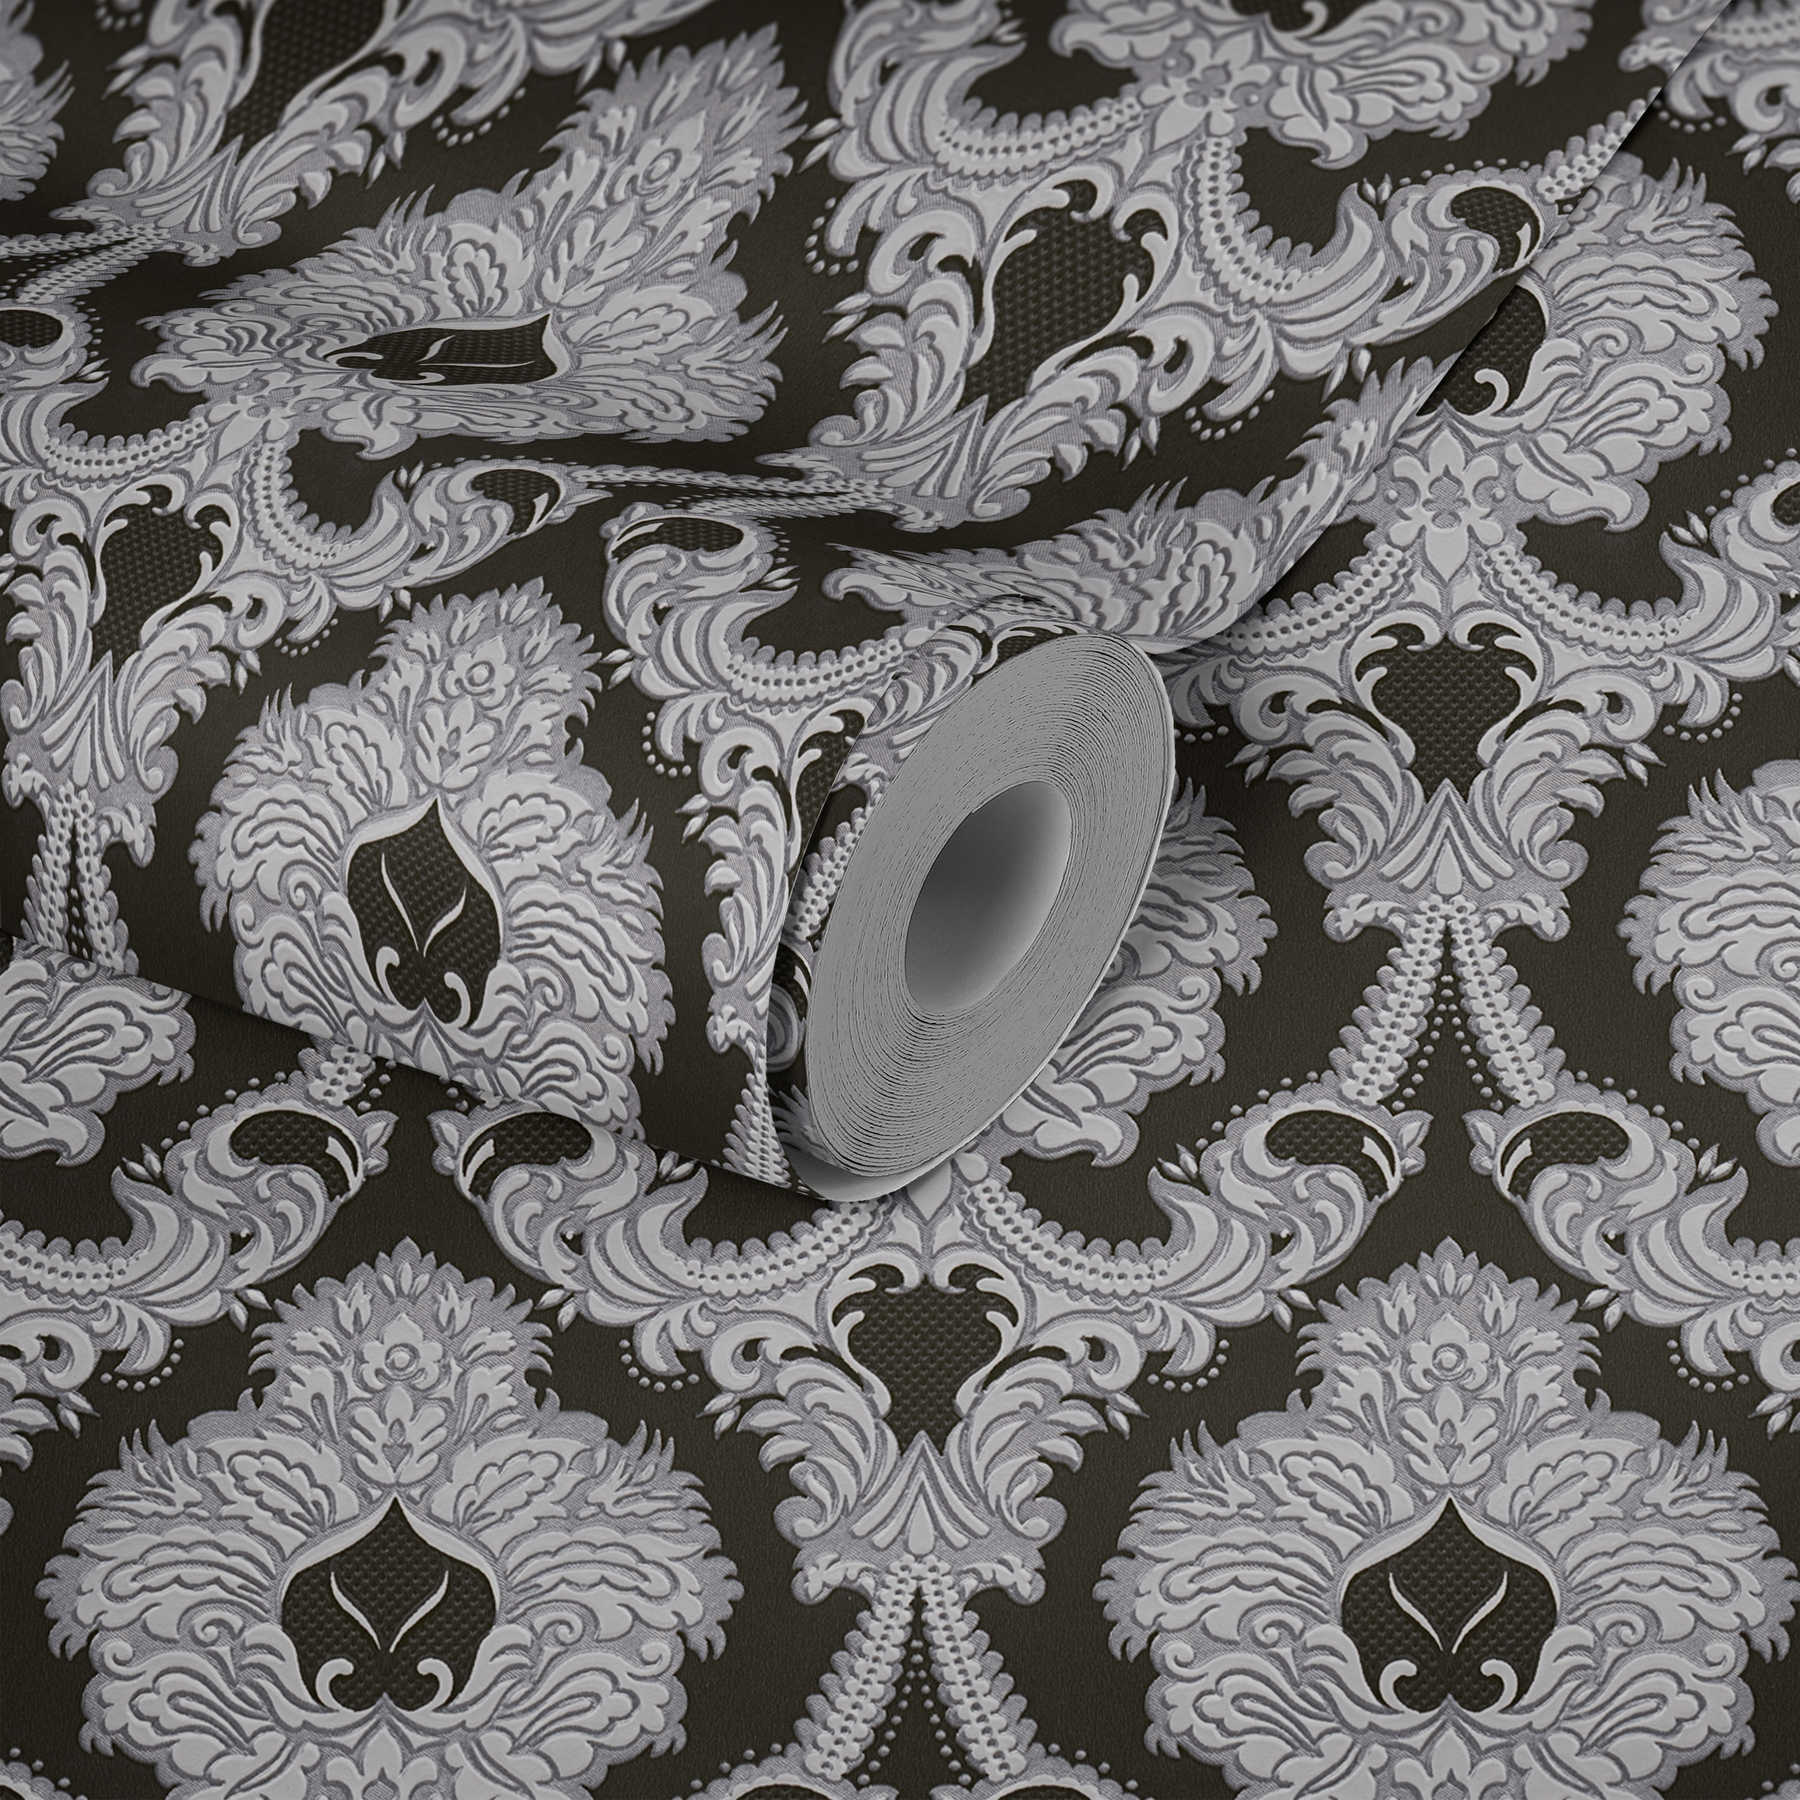             Carta da parati con ornamenti opulenti, accenti d'argento - argento, nero, bianco
        